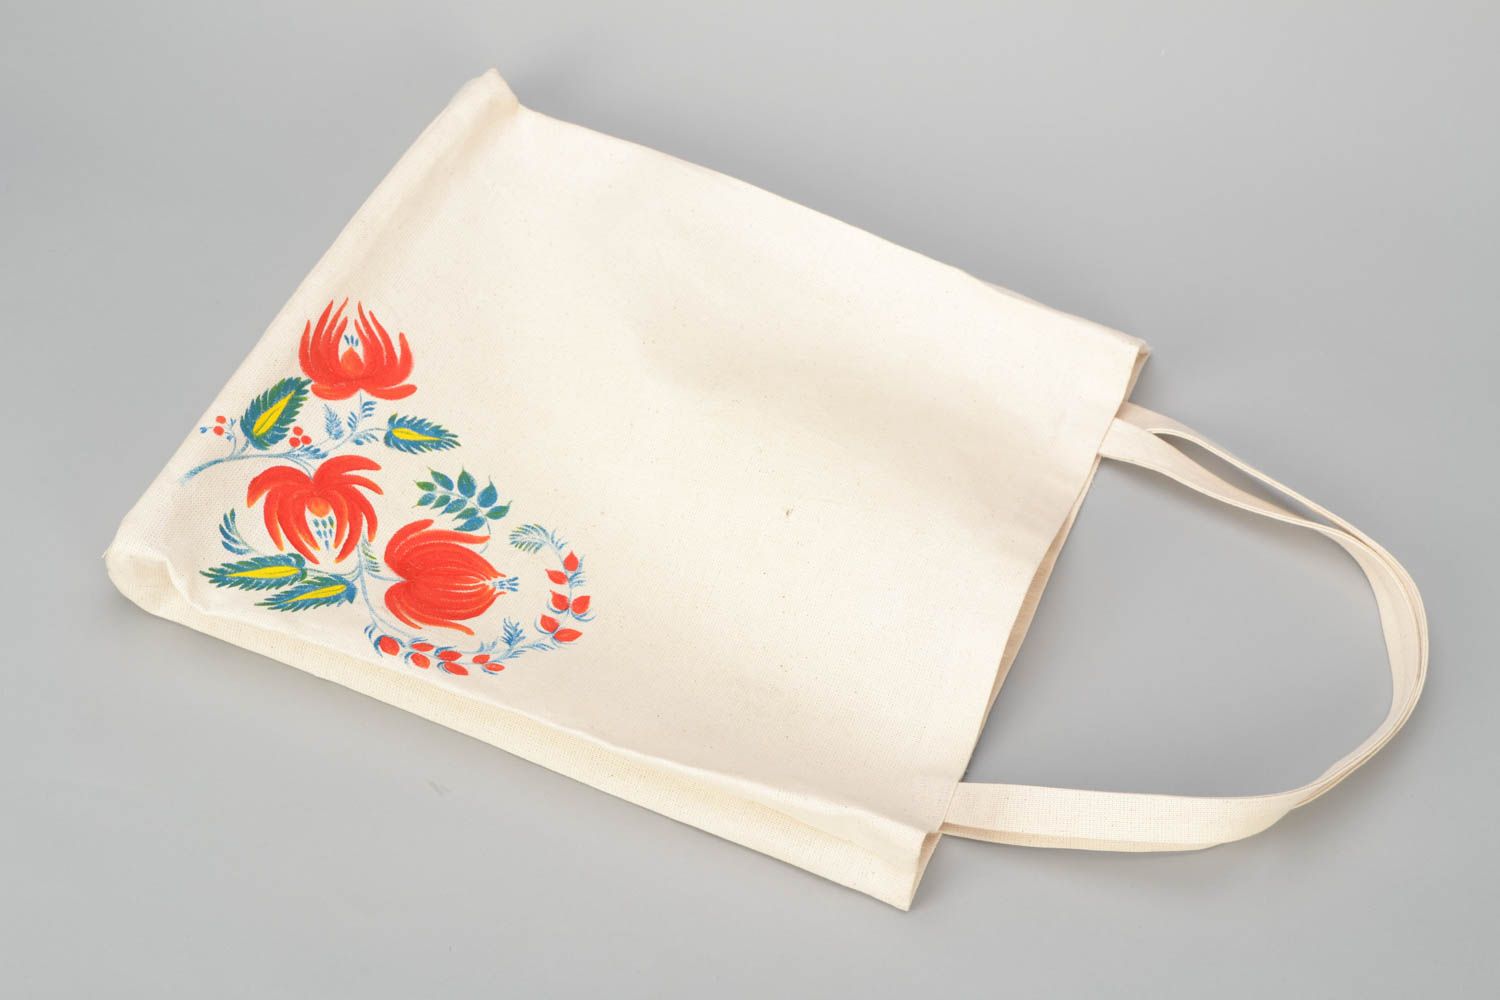 Textil Tasche mit Blumen  foto 3